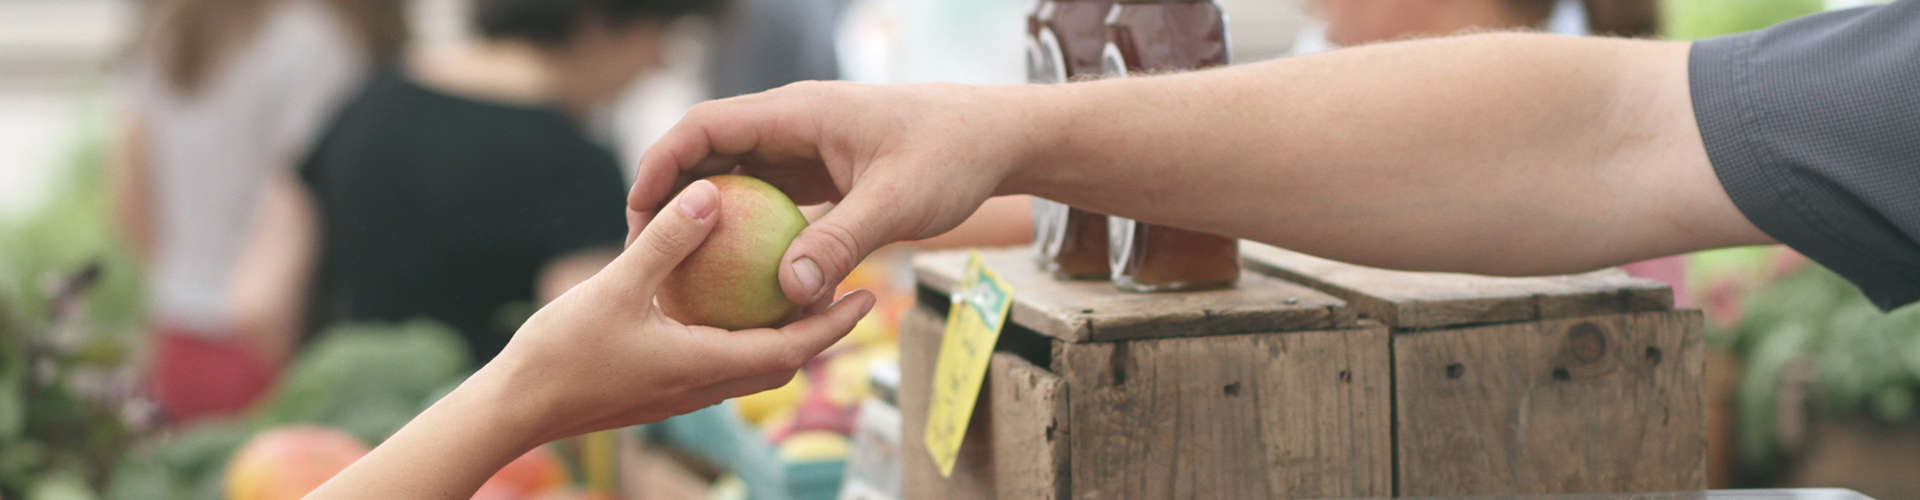 רוכל מעביר פרי ללקוח בסיור בשוק